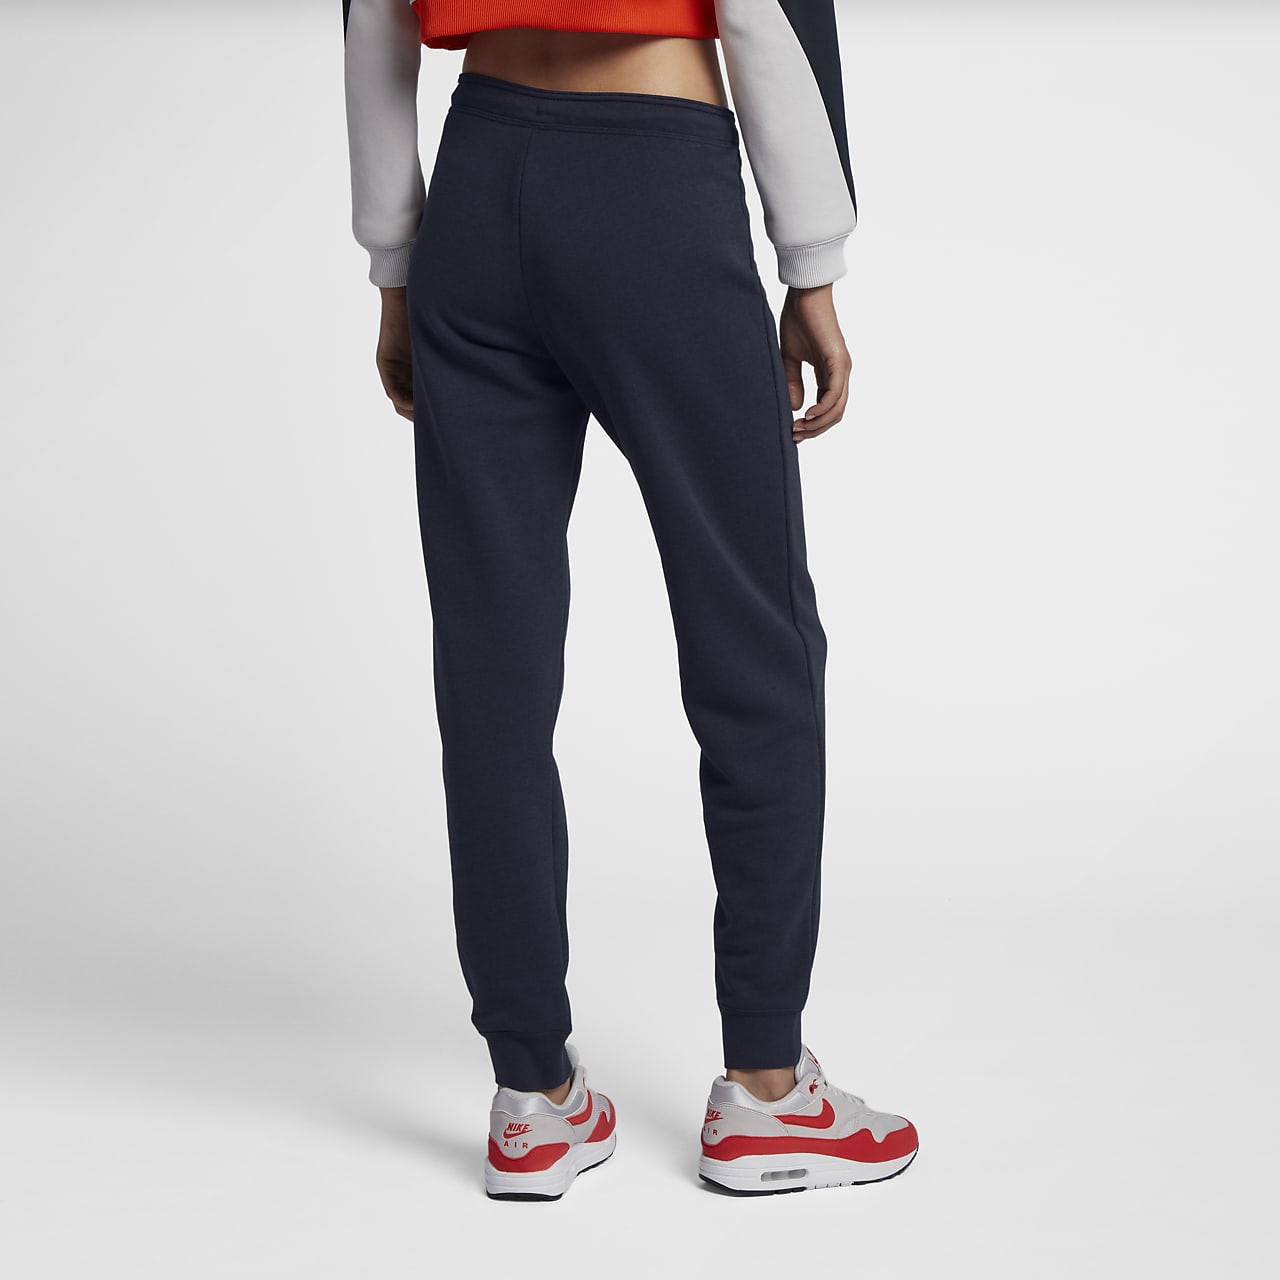 Buy Nike Women's Sportswear Rally Loose Fit Sweatpants (Black